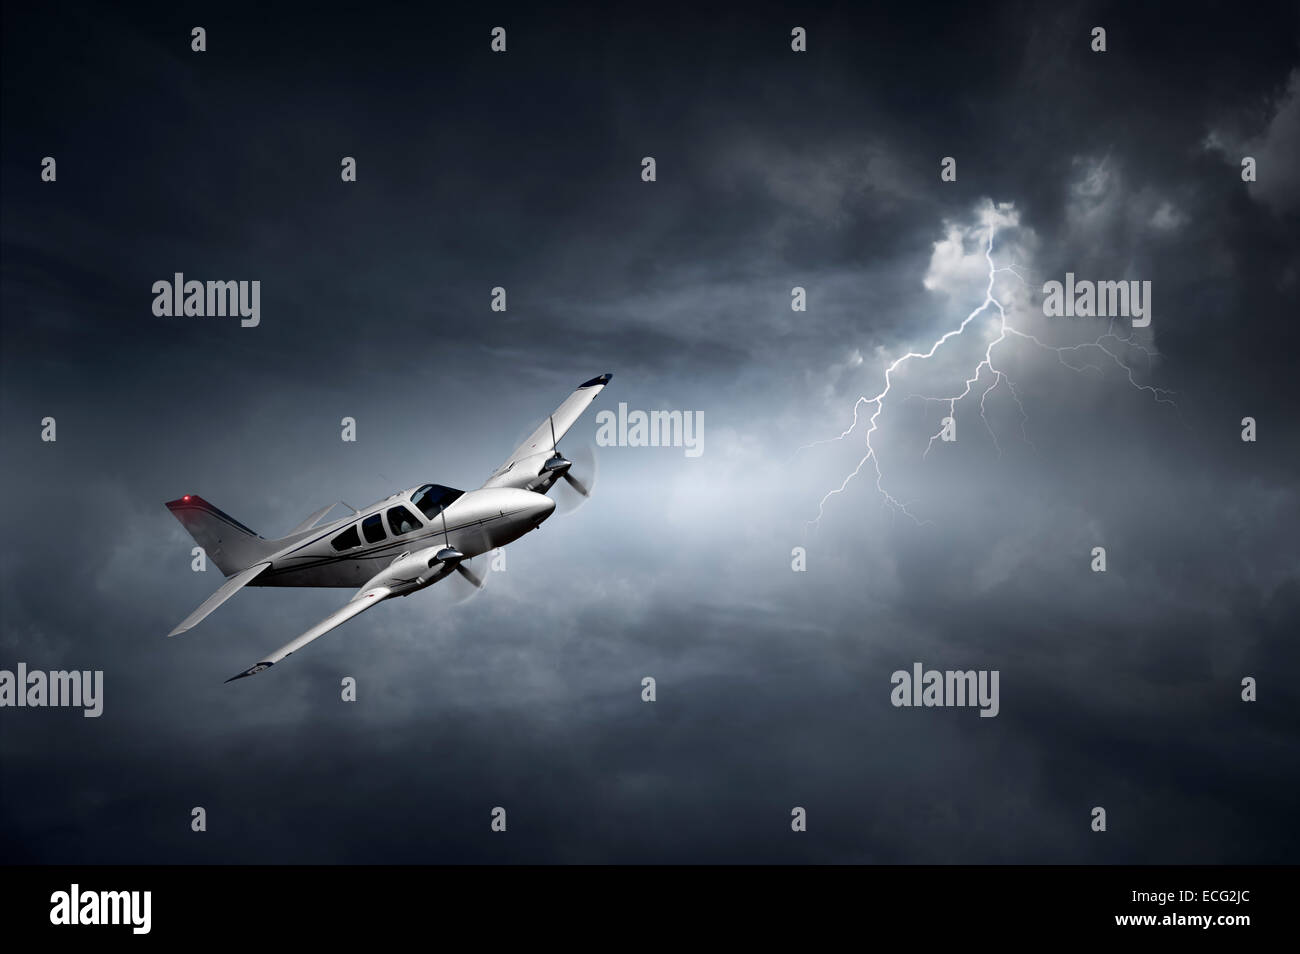 Volo aereo in tempesta con fulmini (concetto di rischio - opere d'arte digitale) Foto Stock